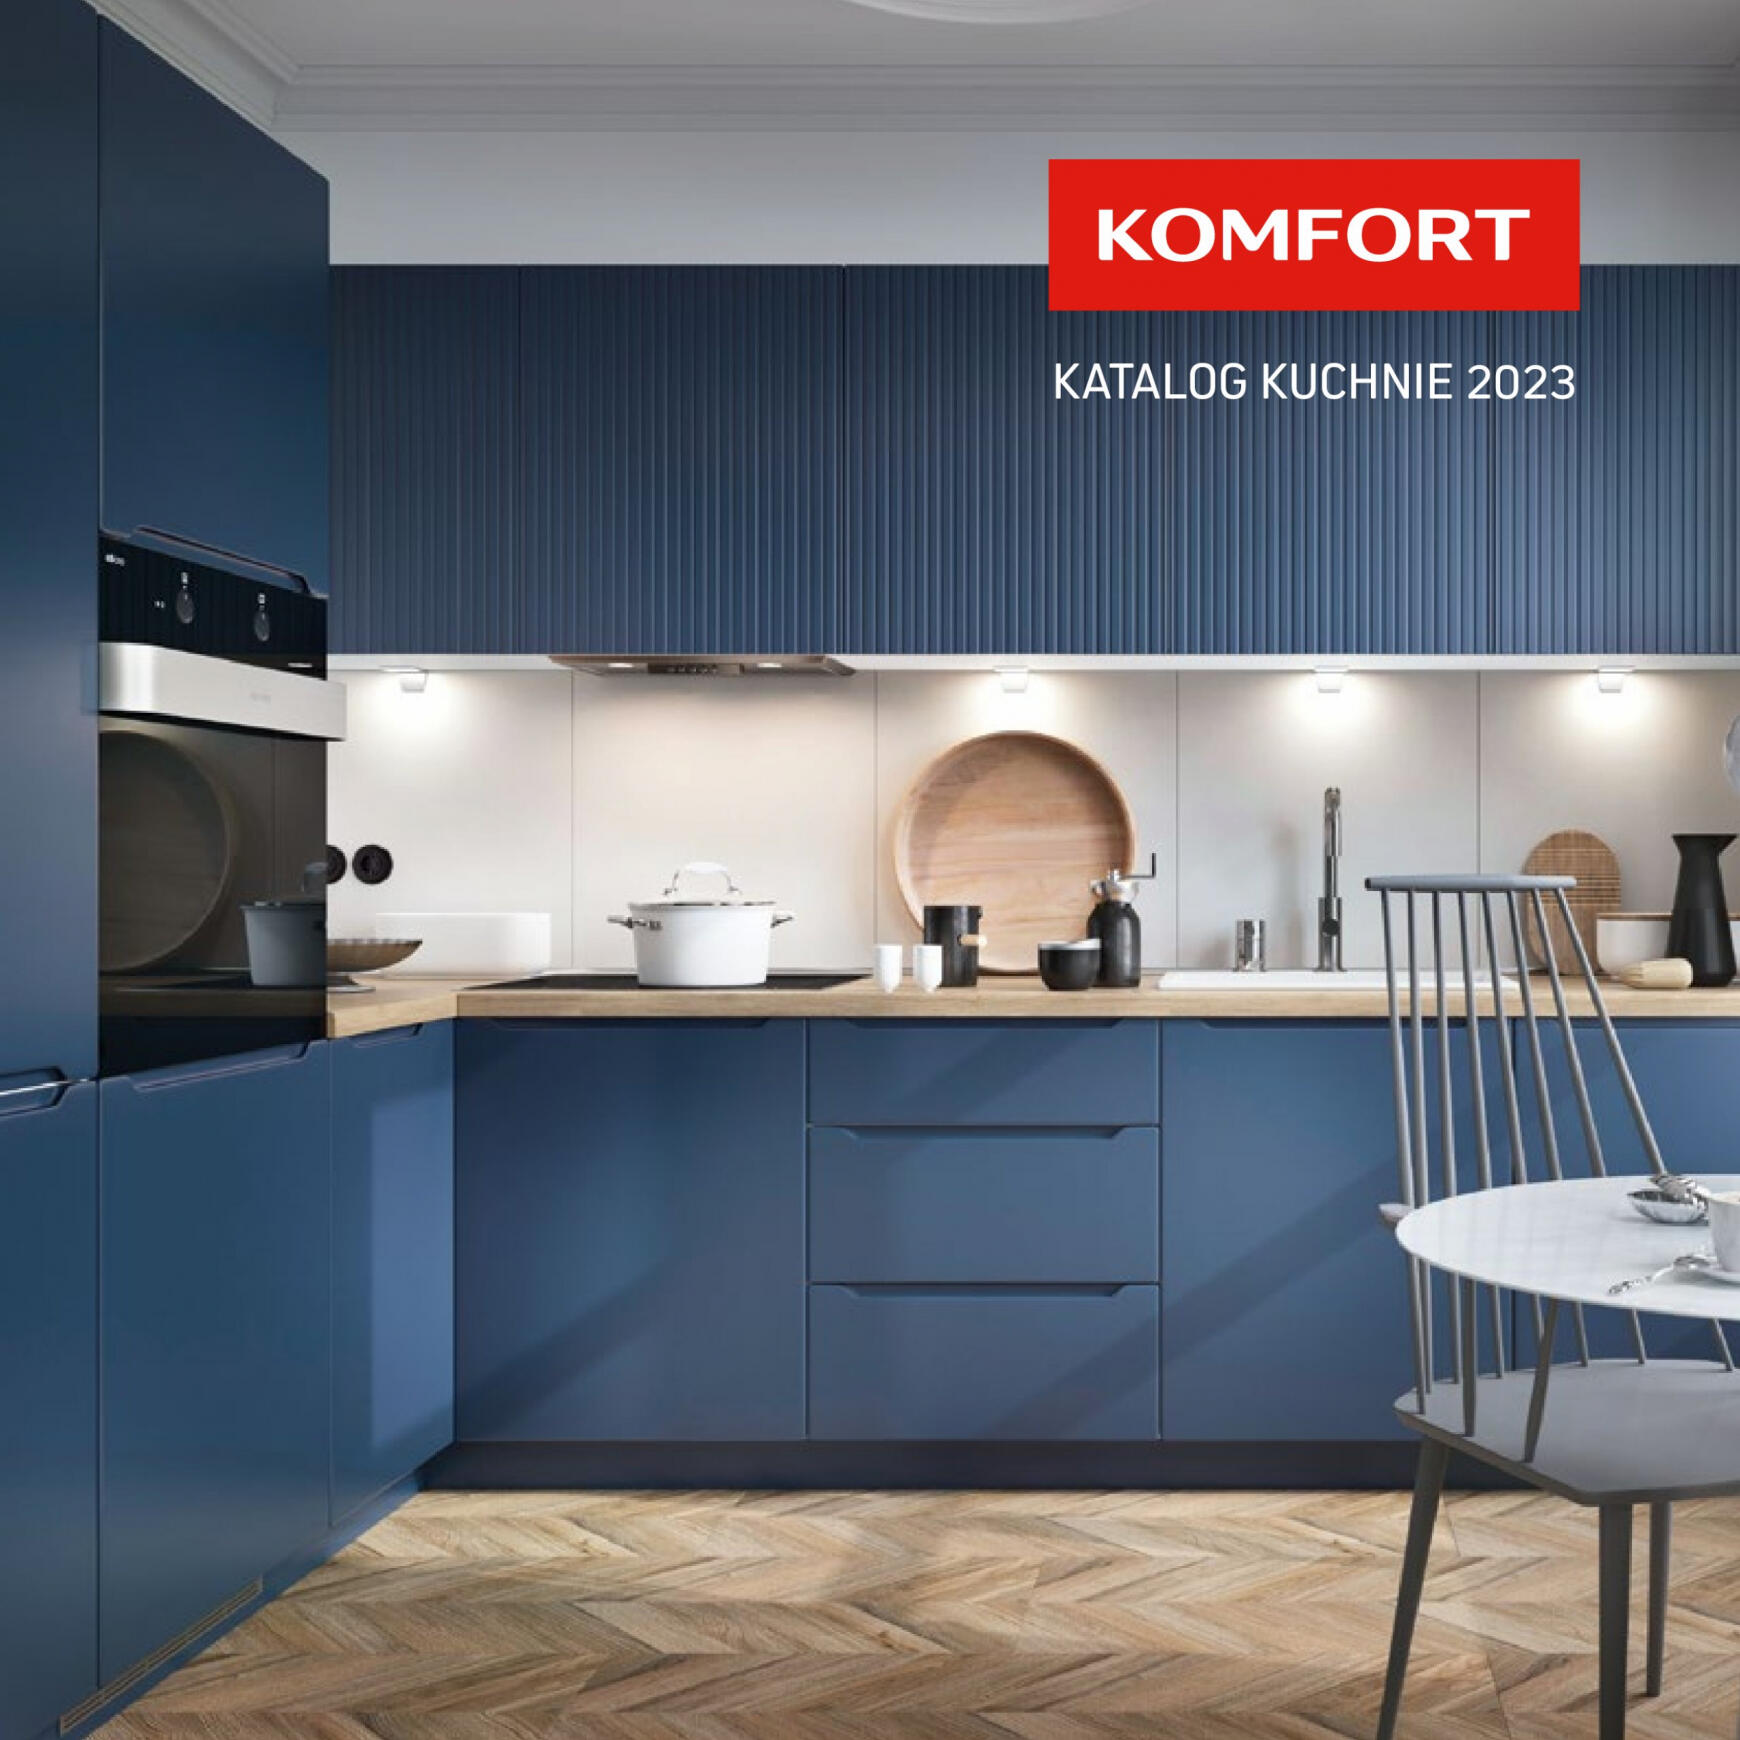 komfort - Komfort - Katalog kuchnie - page: 1